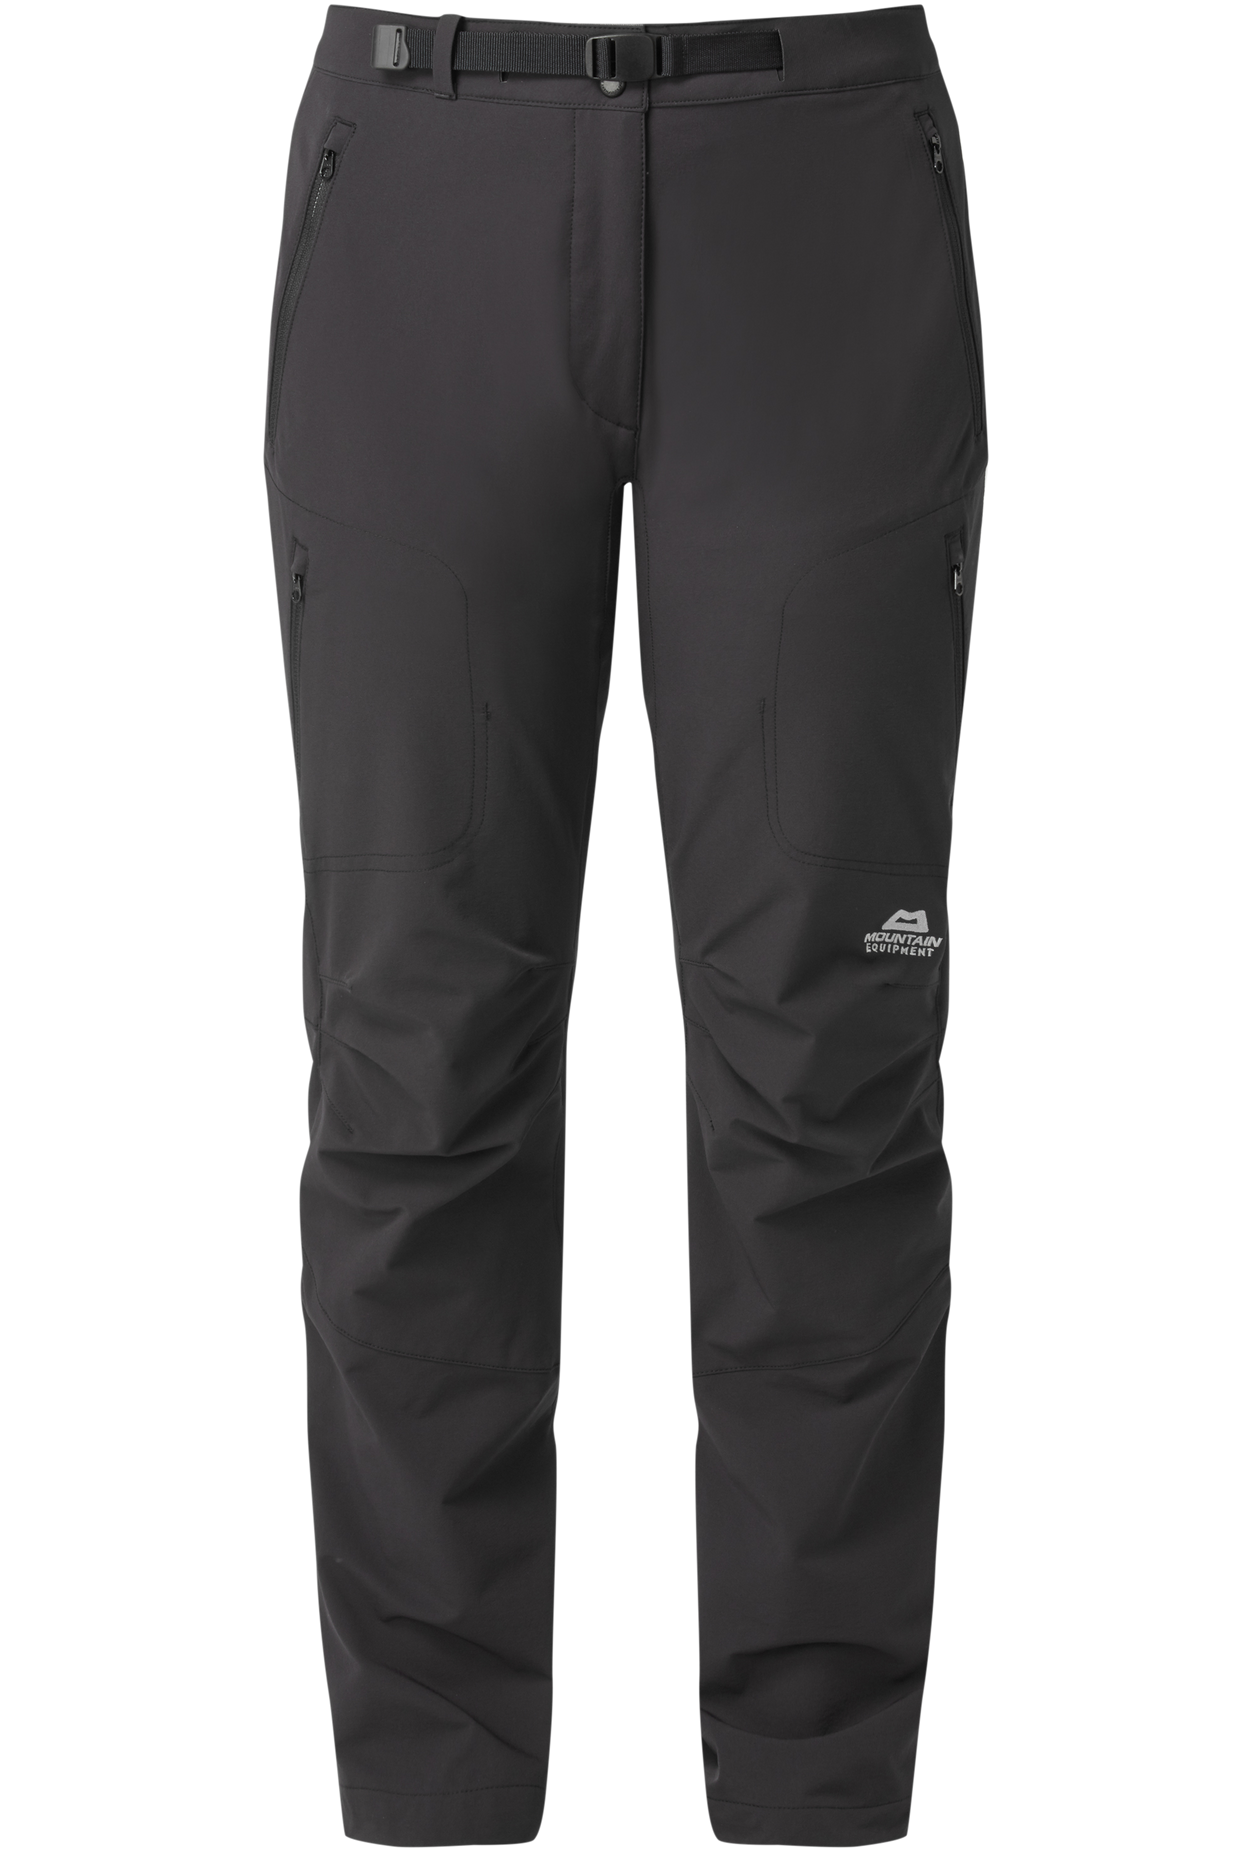 Mountain Equipment dámské softshellové kalhoty Chamois Wmns Pant Barva: black, Velikost: 20/XXXL